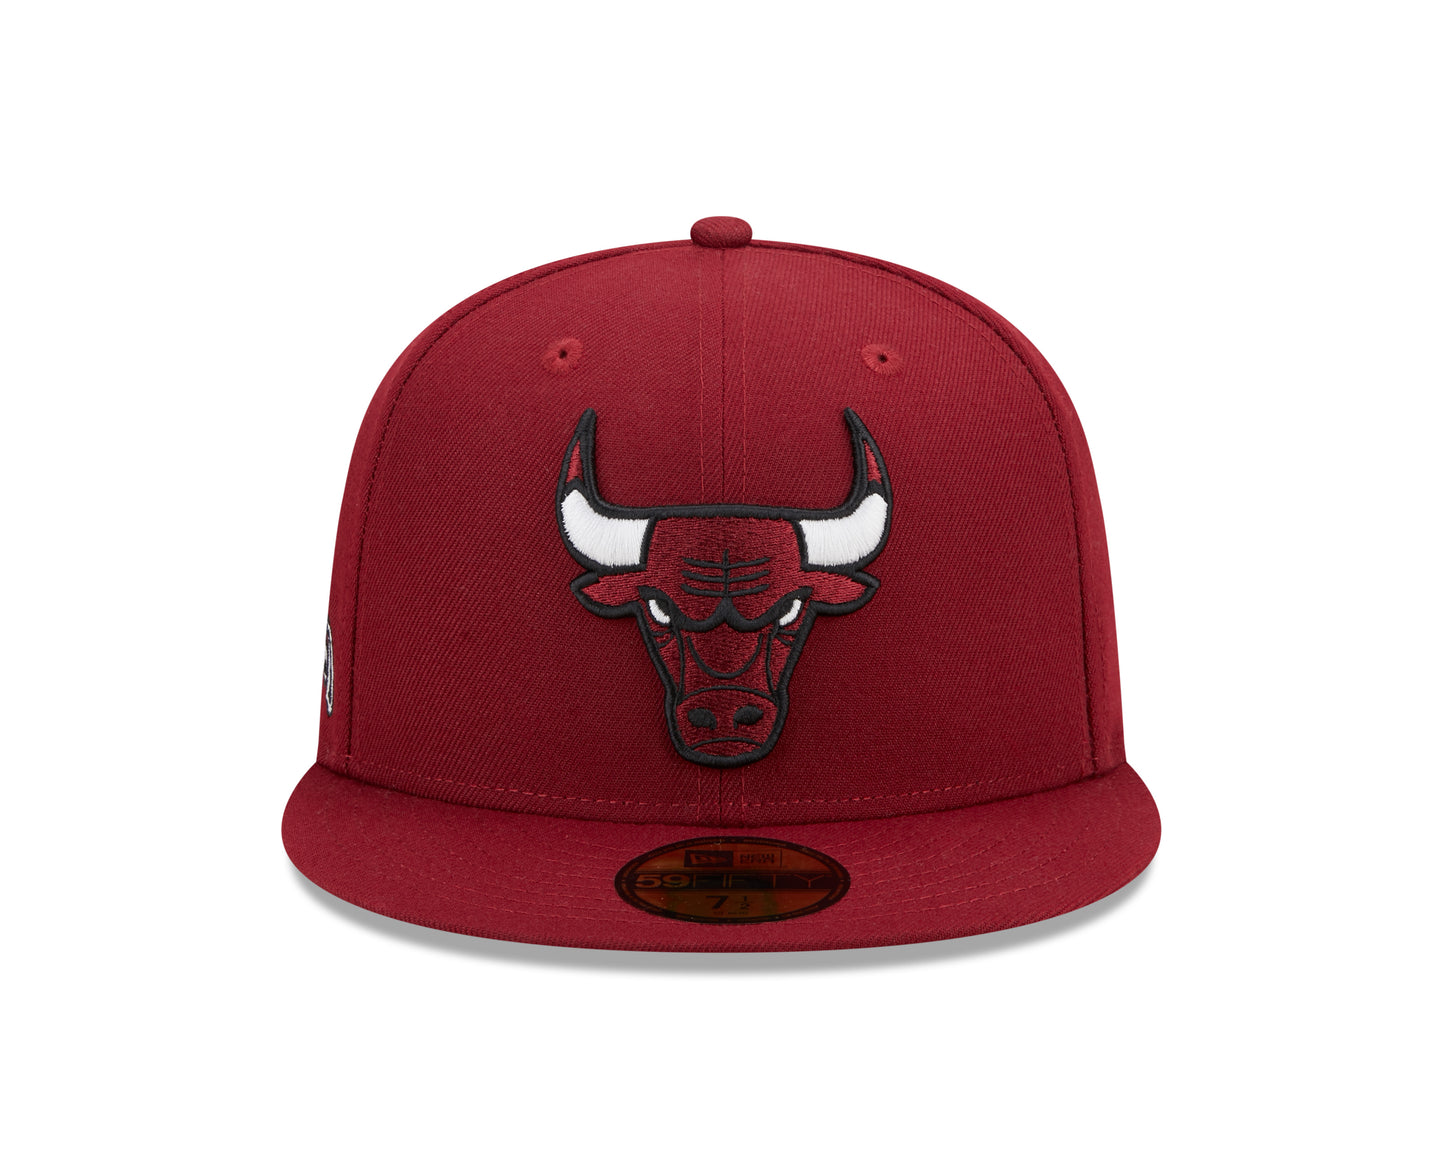 59Fifty Fitted Cap NBA Chicago Bulls Alternate  - Cardinal - Headz Up 